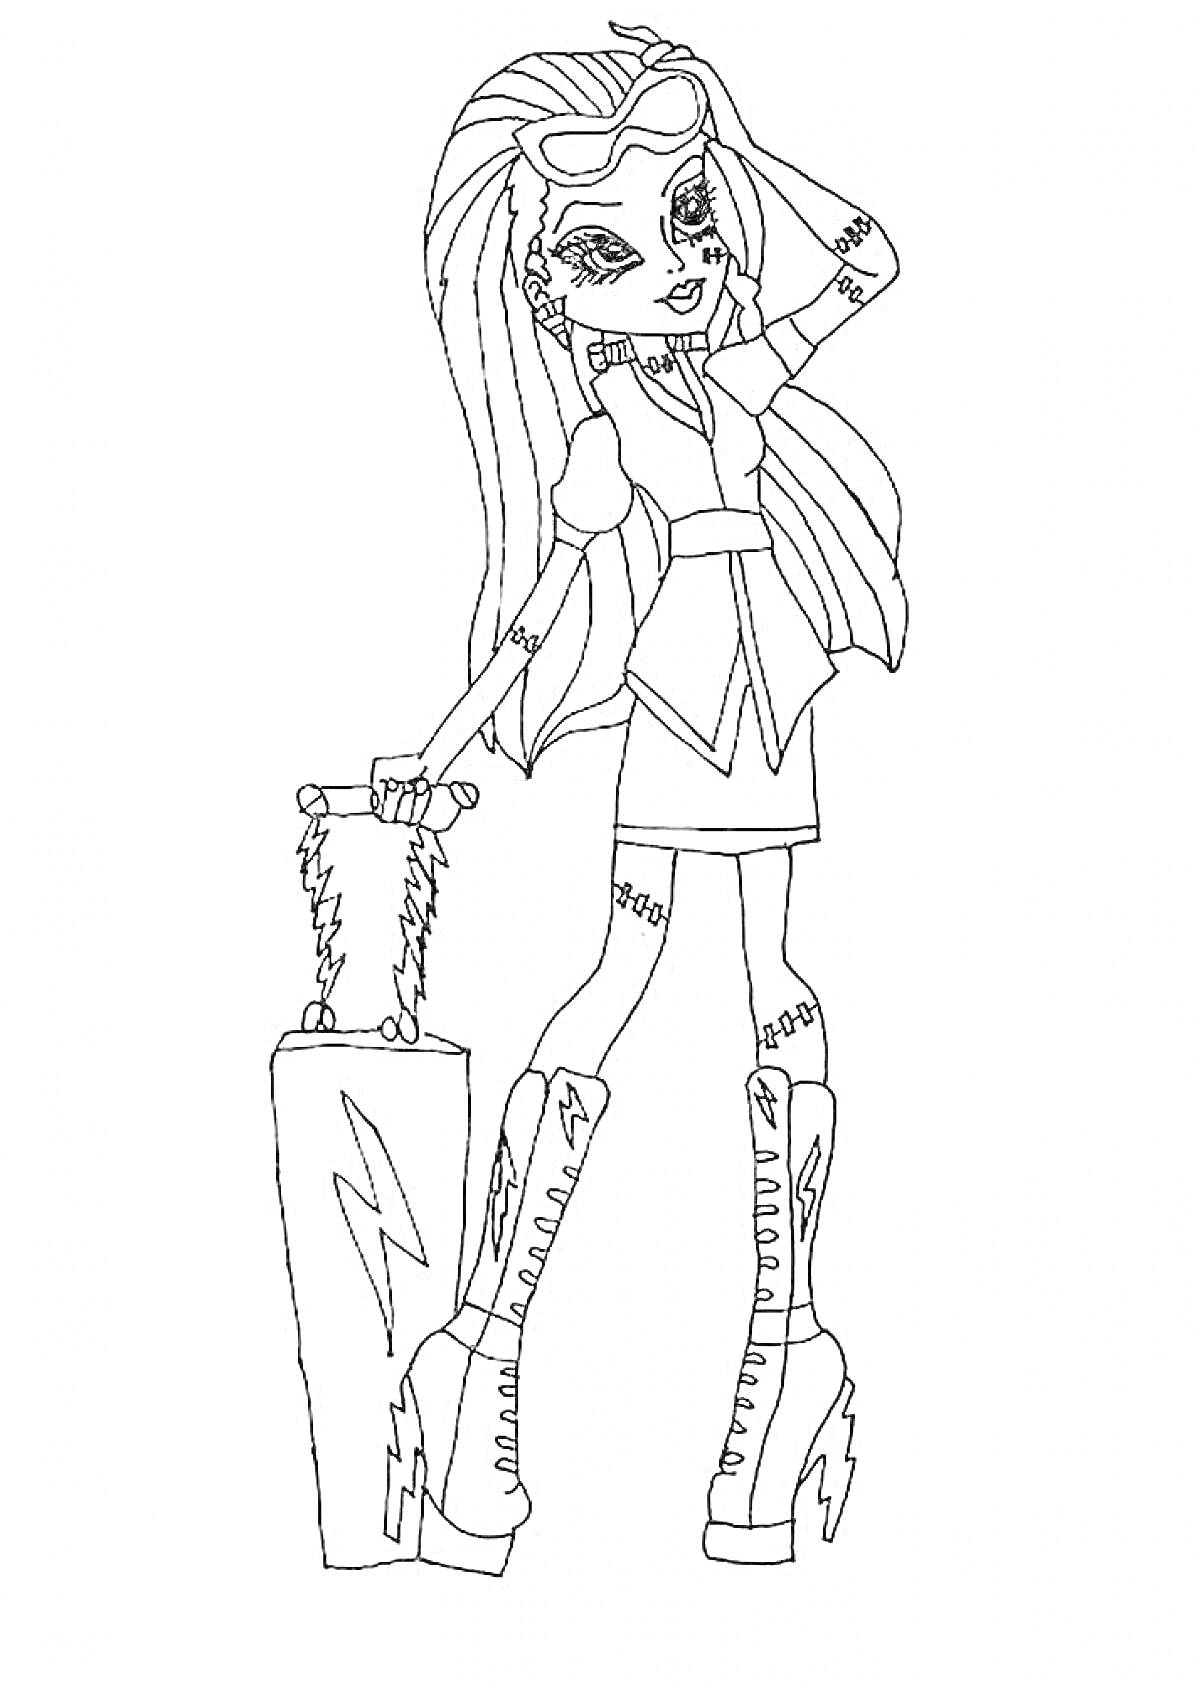 Раскраска Девушка из Монстер Хай с длинными волосами, в платье и ботинках на платформе, с чемоданом в руке